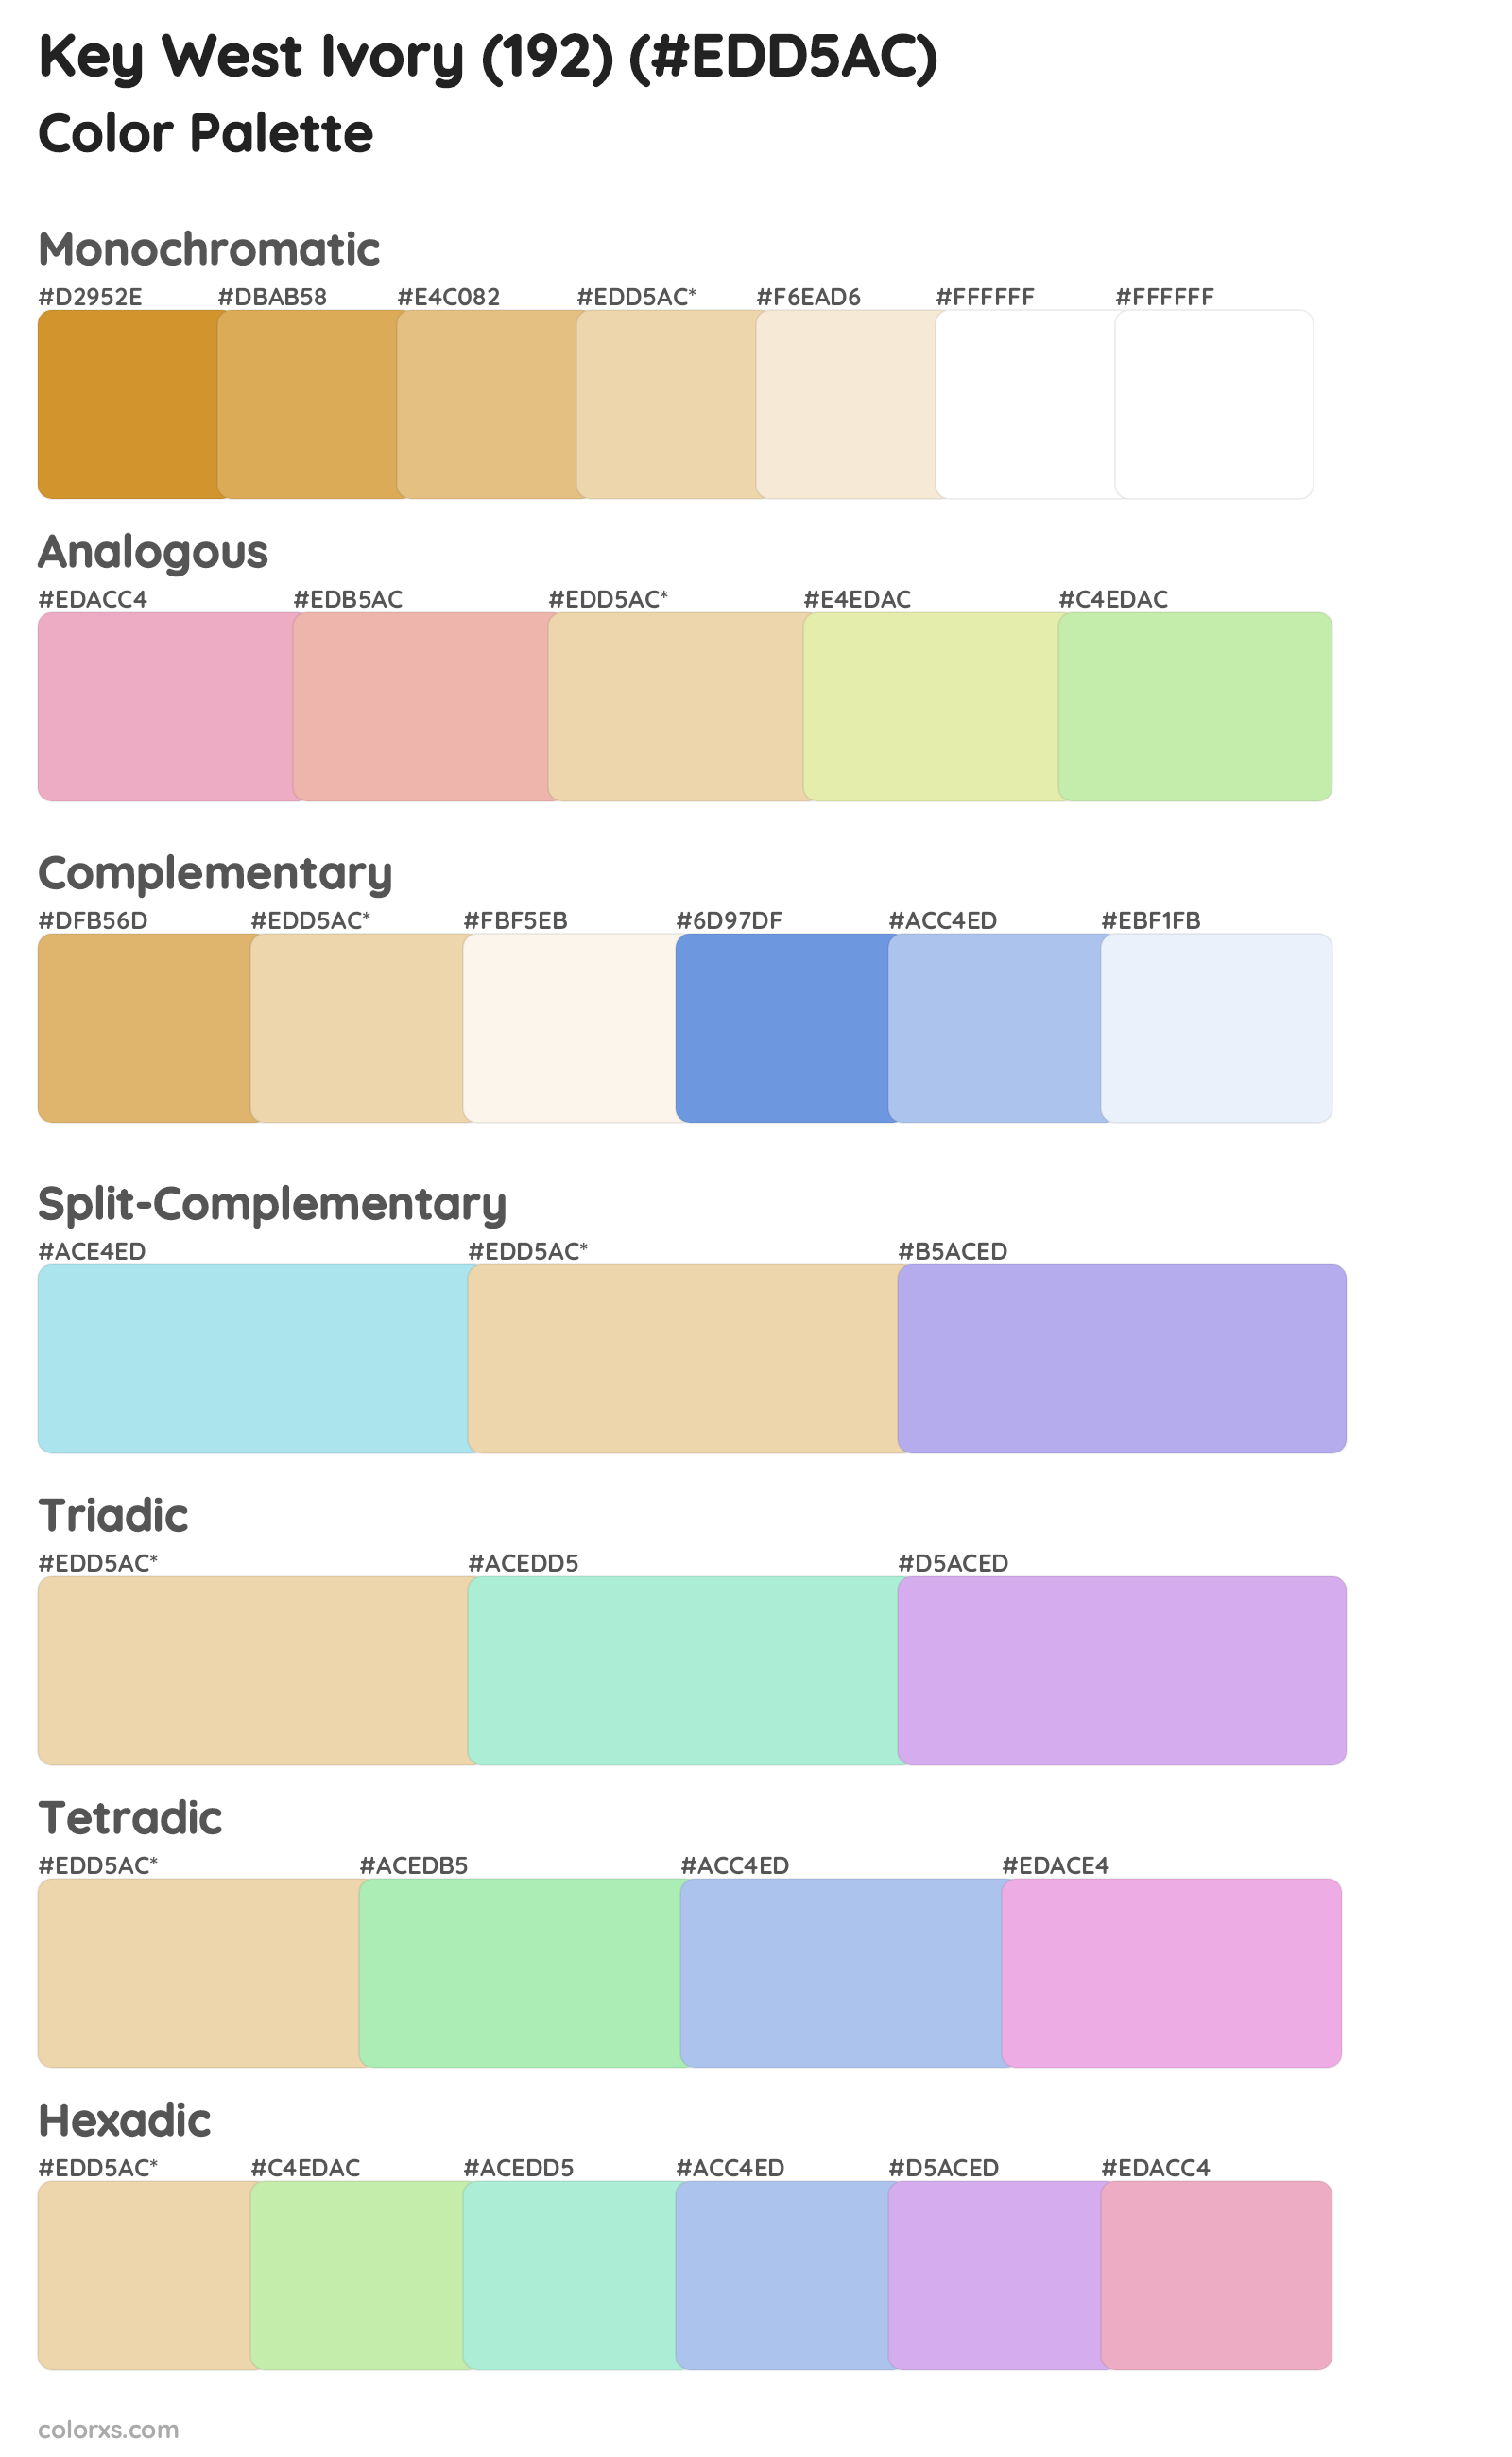 Key West Ivory (192) Color Scheme Palettes